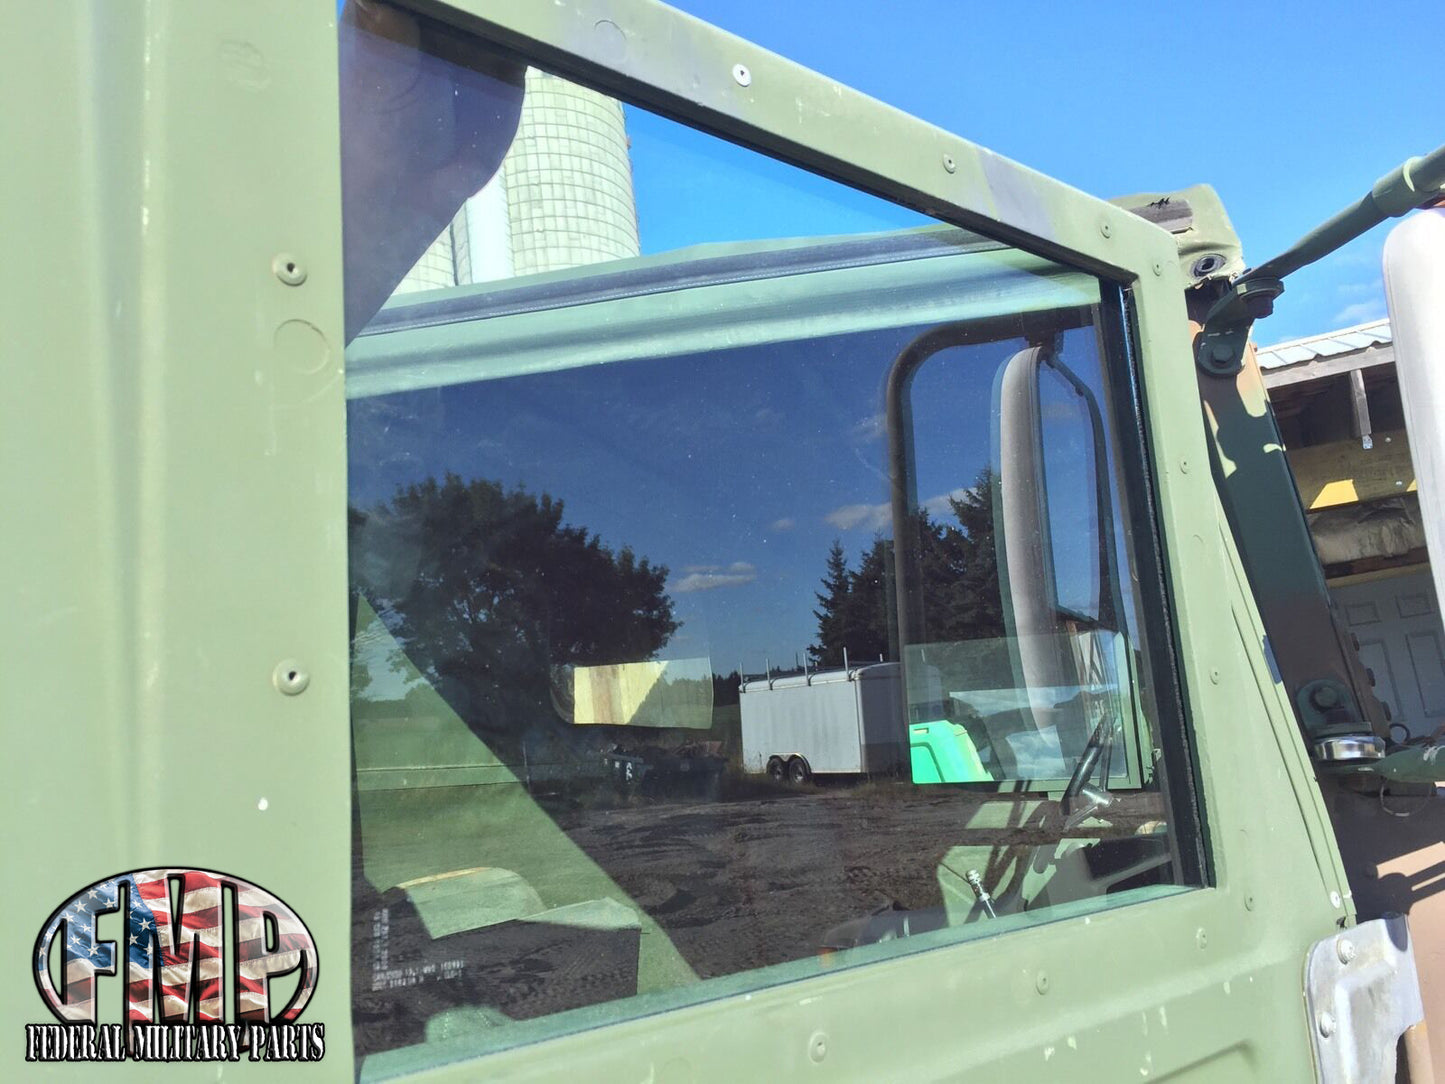 ملون النوافذ الخضراء مصممة من 4 للأبواب العسكرية Humvee X-Doors